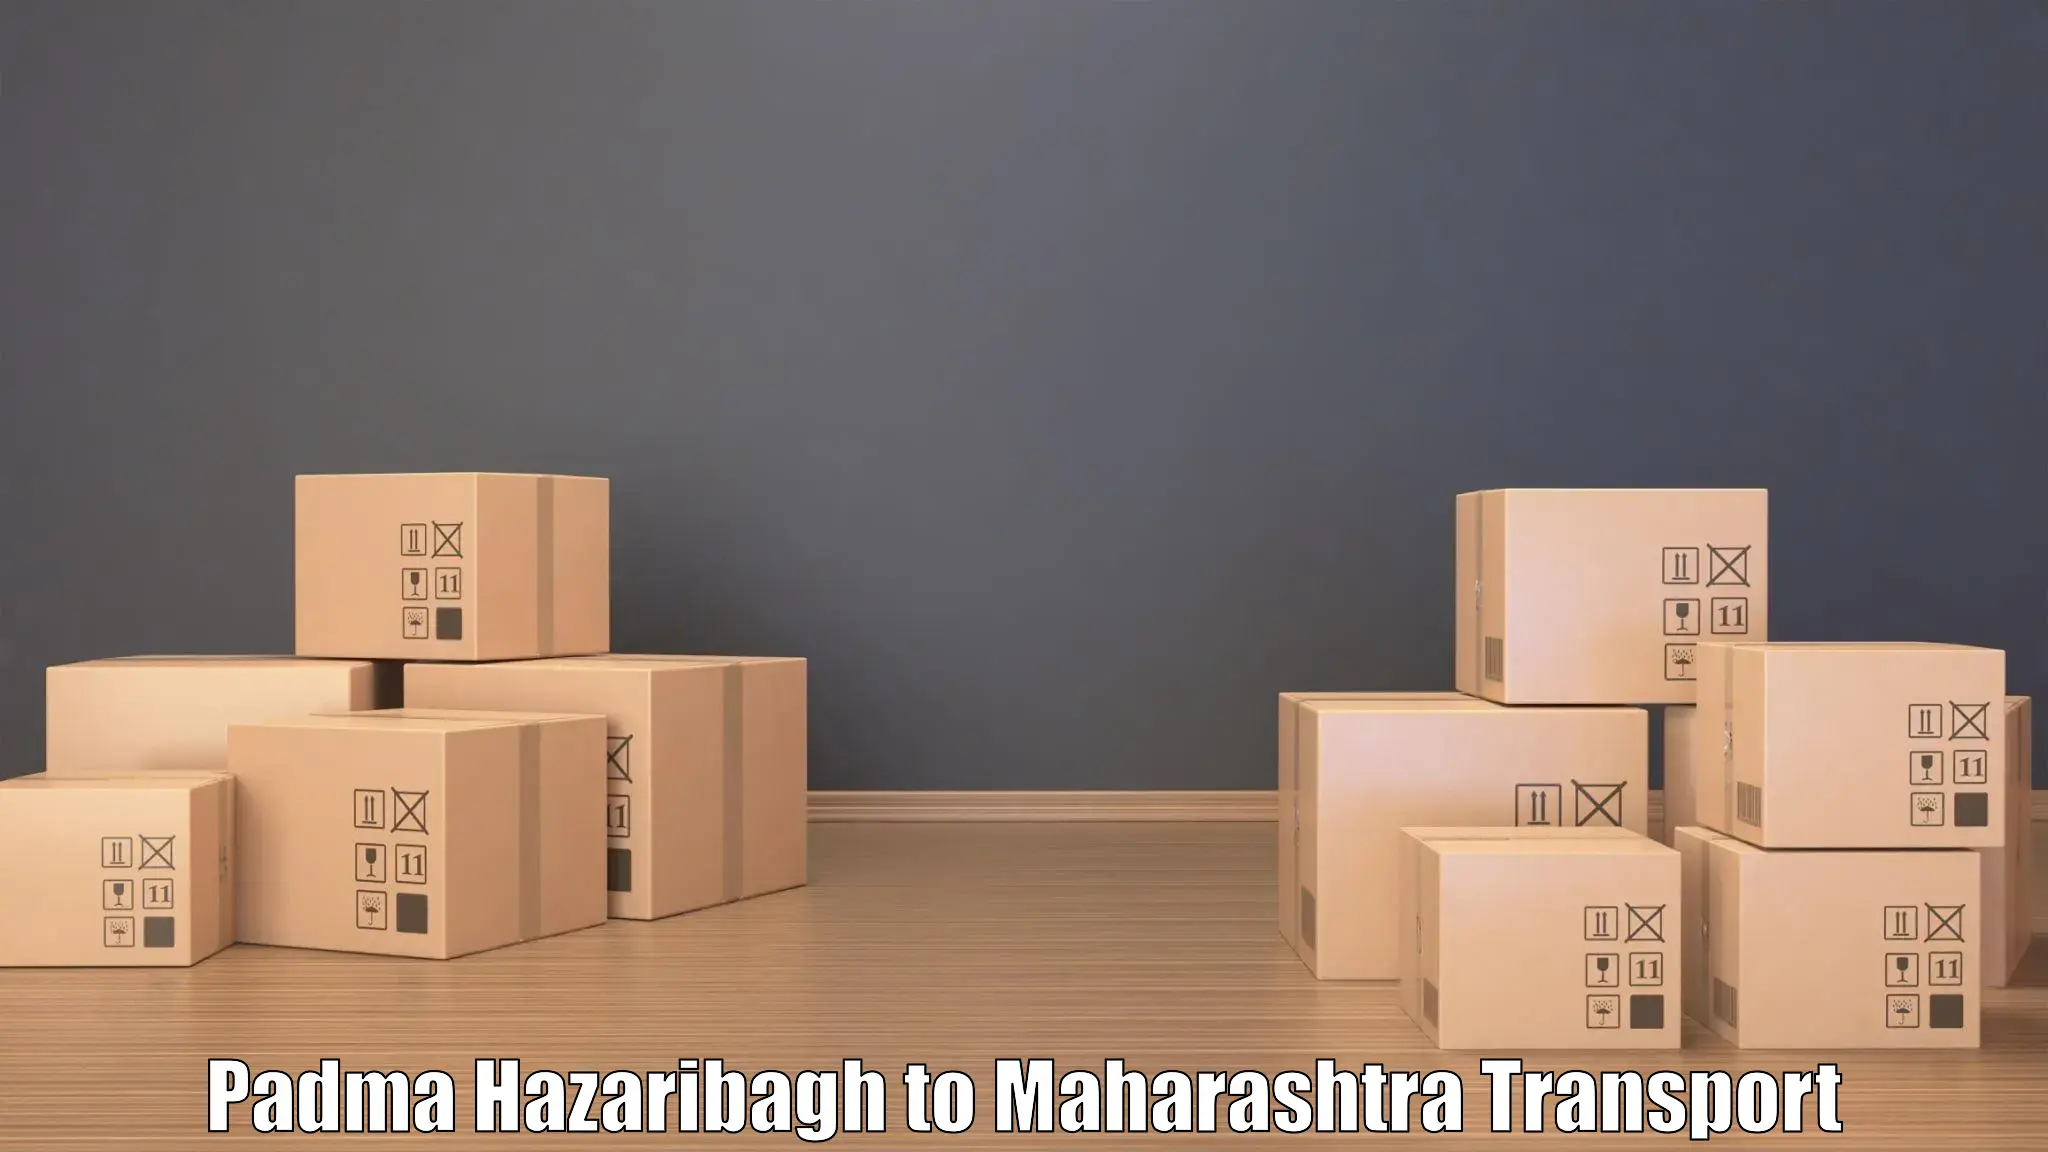 Shipping partner Padma Hazaribagh to Mahabaleshwar